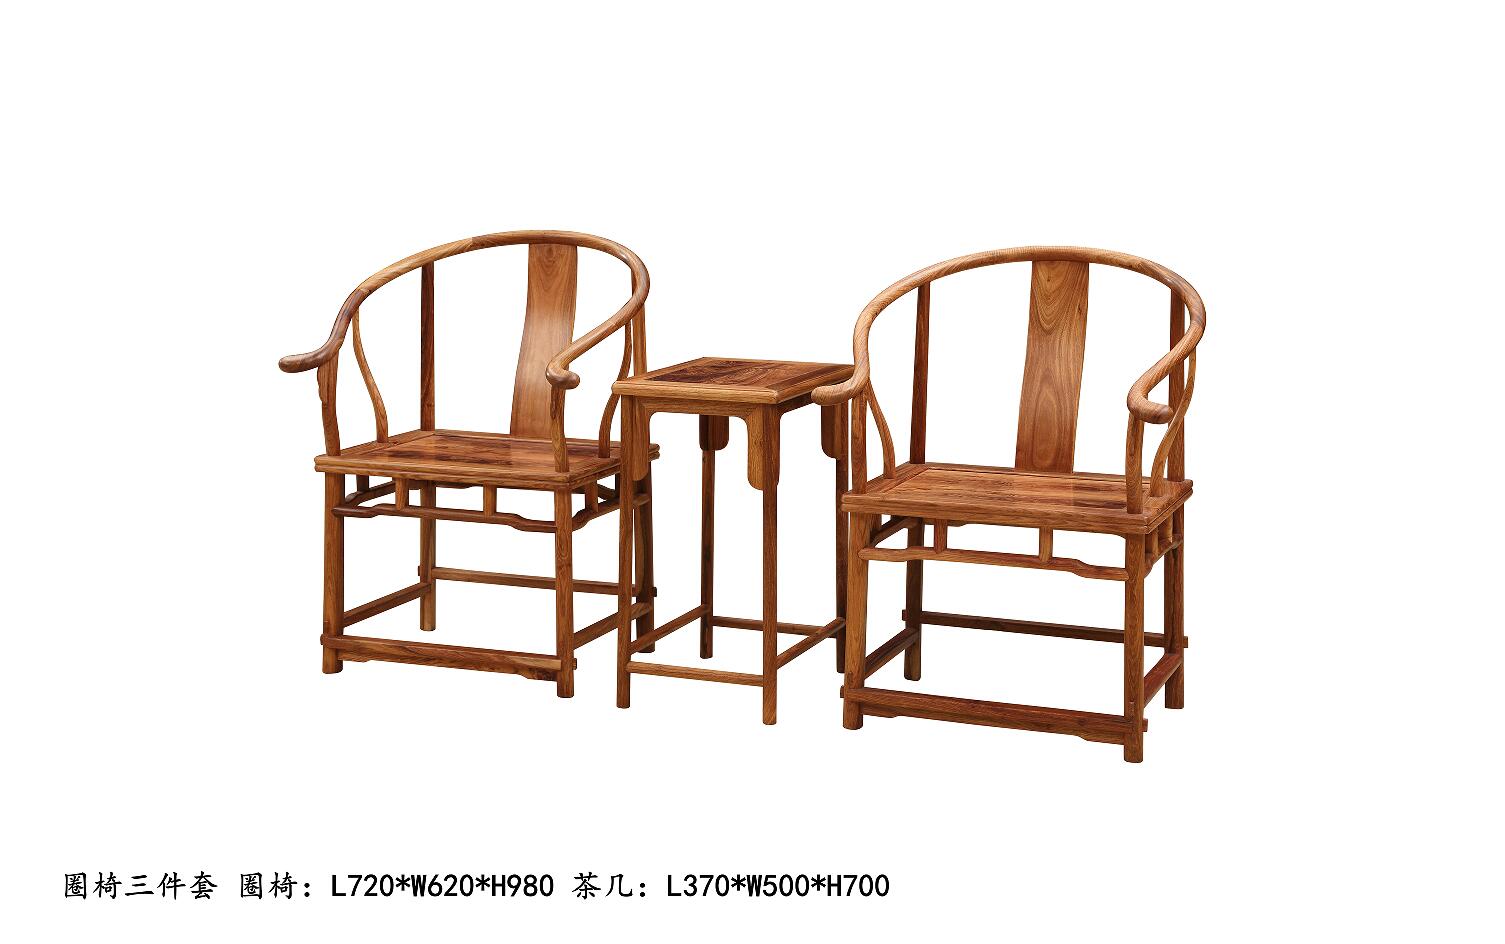 山东临沂大清御品红木家具冈比亚刺猬紫檀非洲花梨圈椅3件套